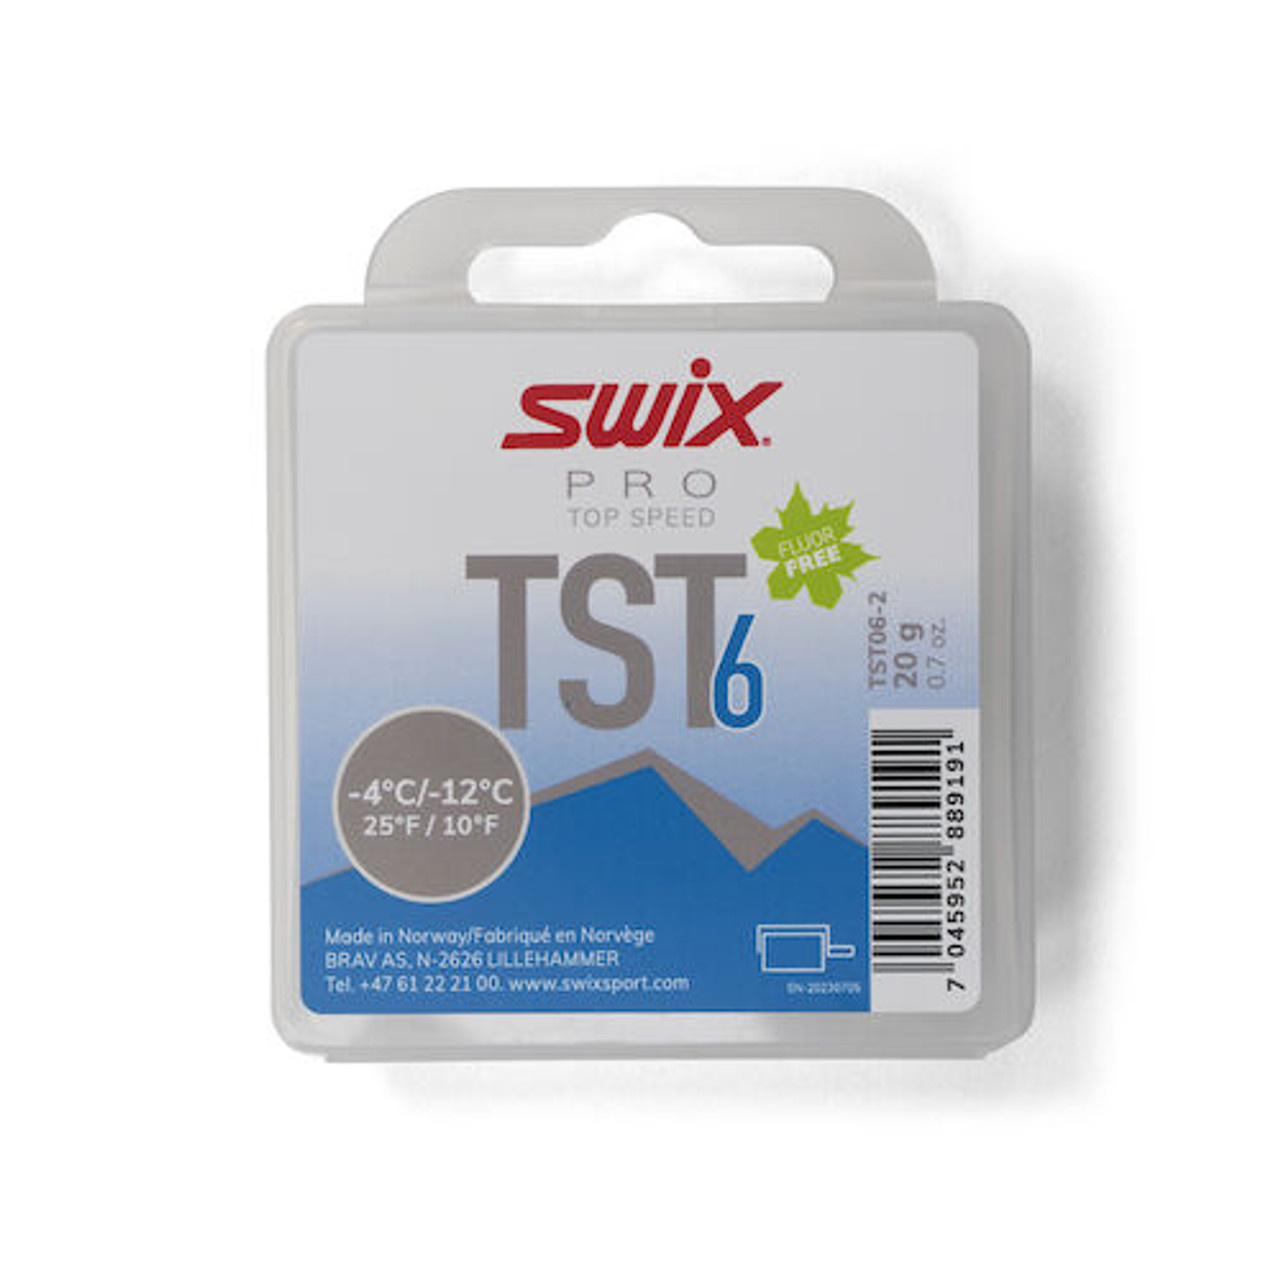 Swix - 20g, Turbo Glide Wax, TS